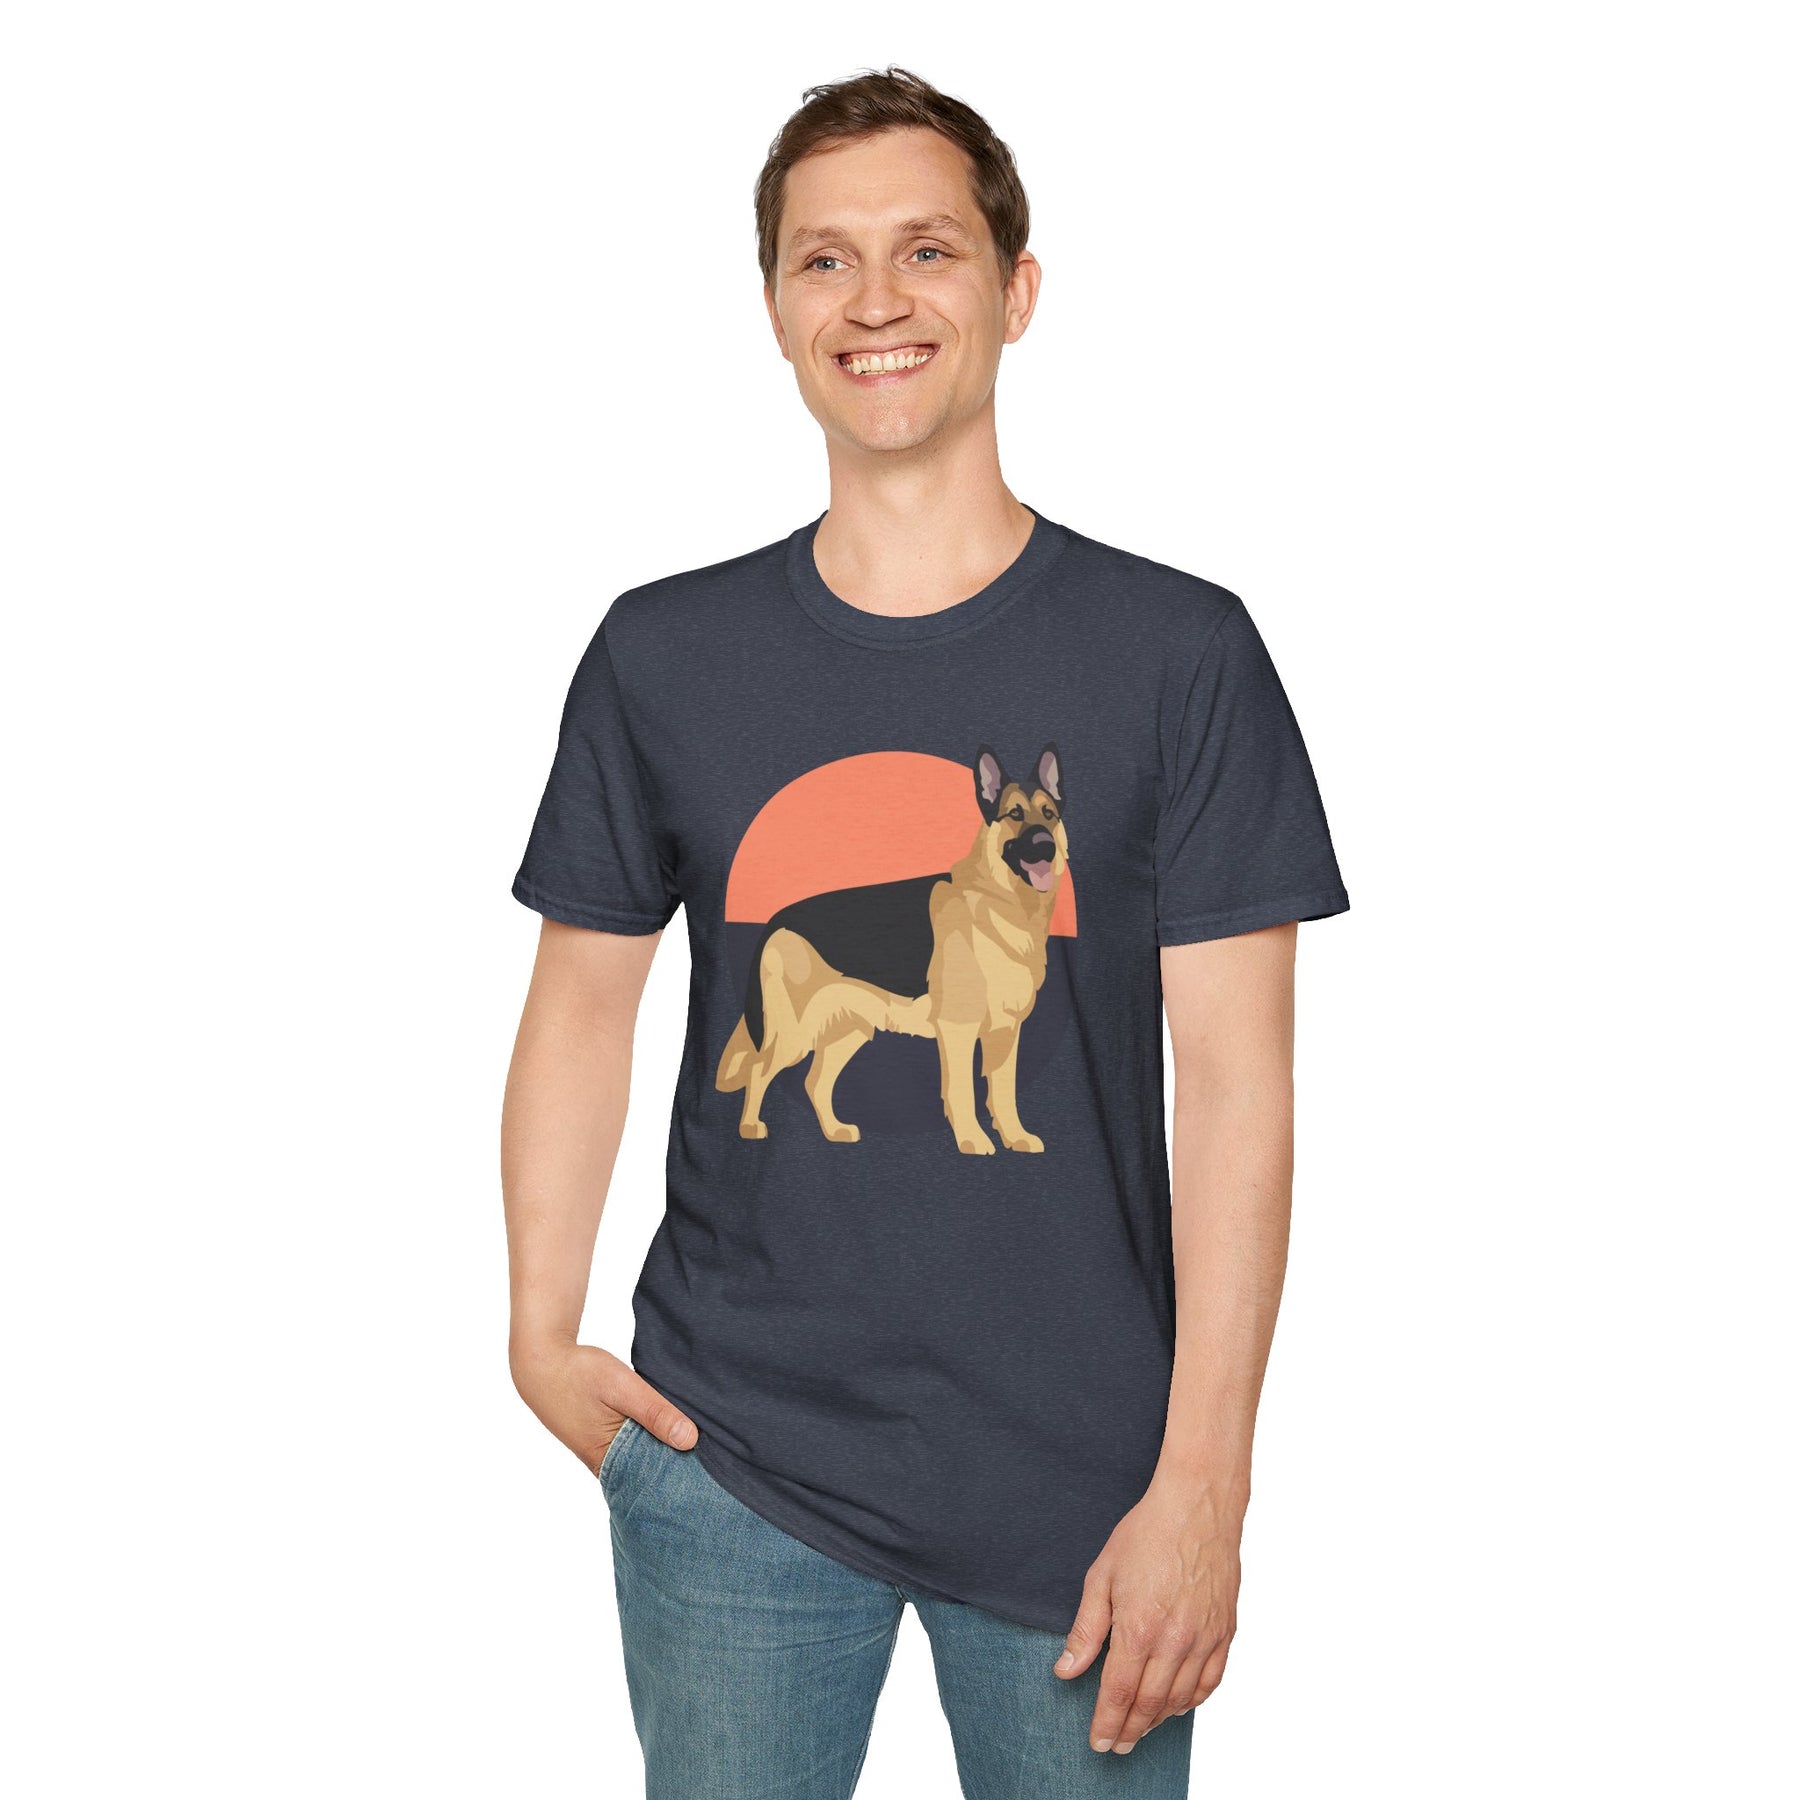 Guardian's Gaze - German Shepherd T Shirts